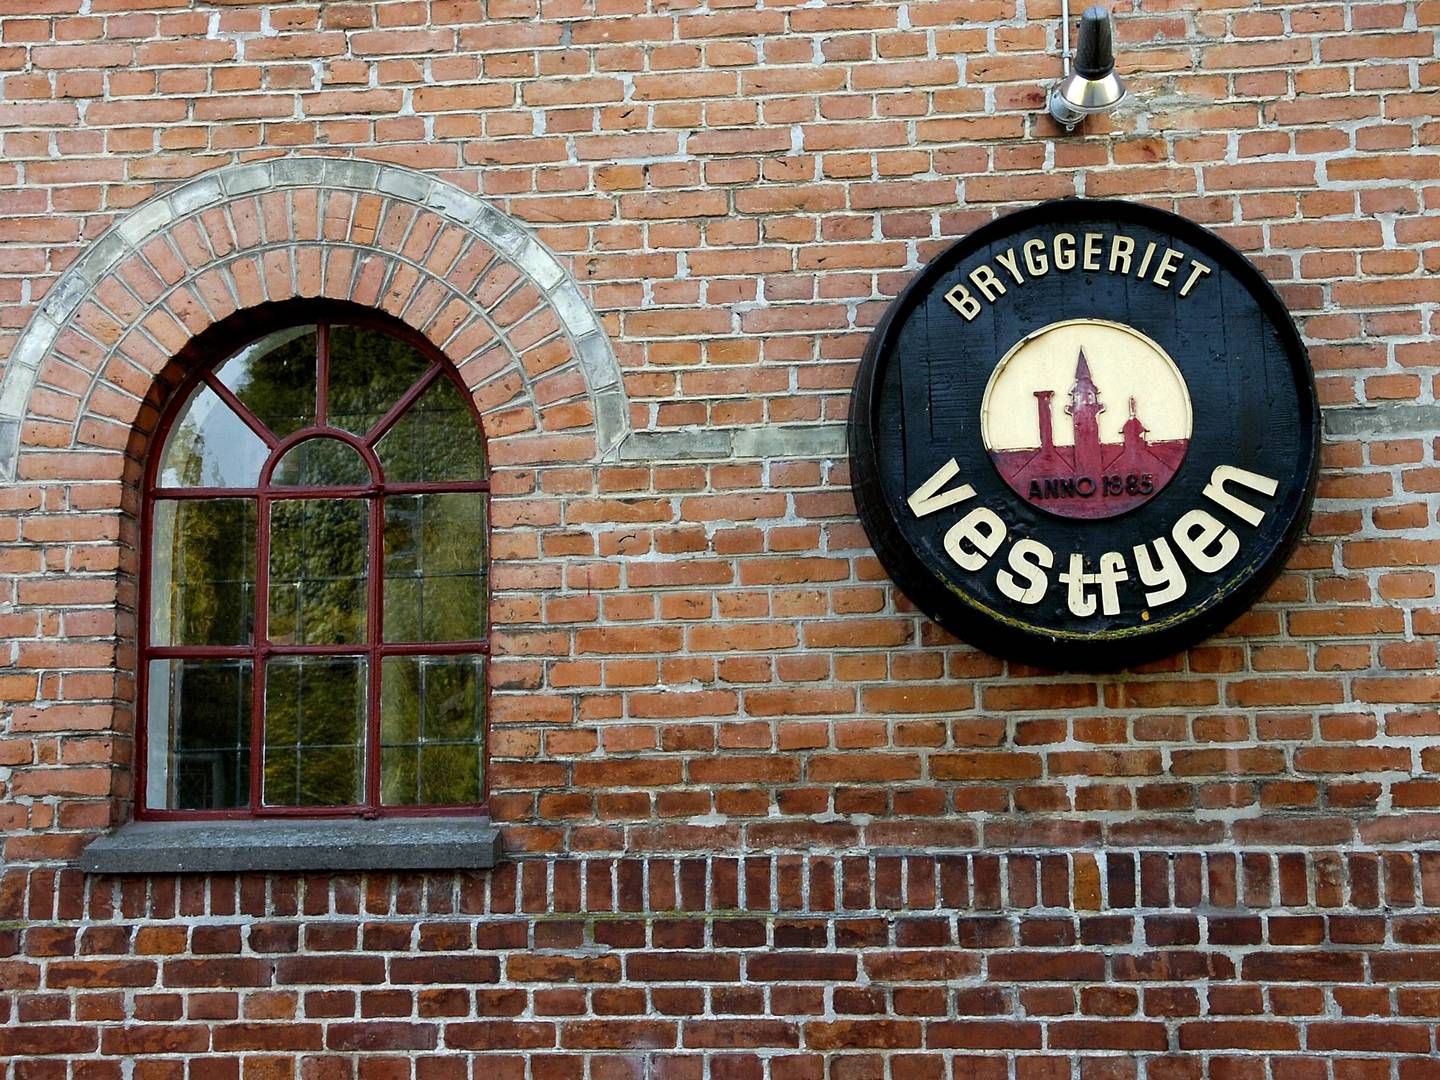 Vestfyen-bryggeriet fik sidste år ny adm. direktør i form af Jette Andersen. | Foto: Carsten Andreasen/Jyllands-Posten